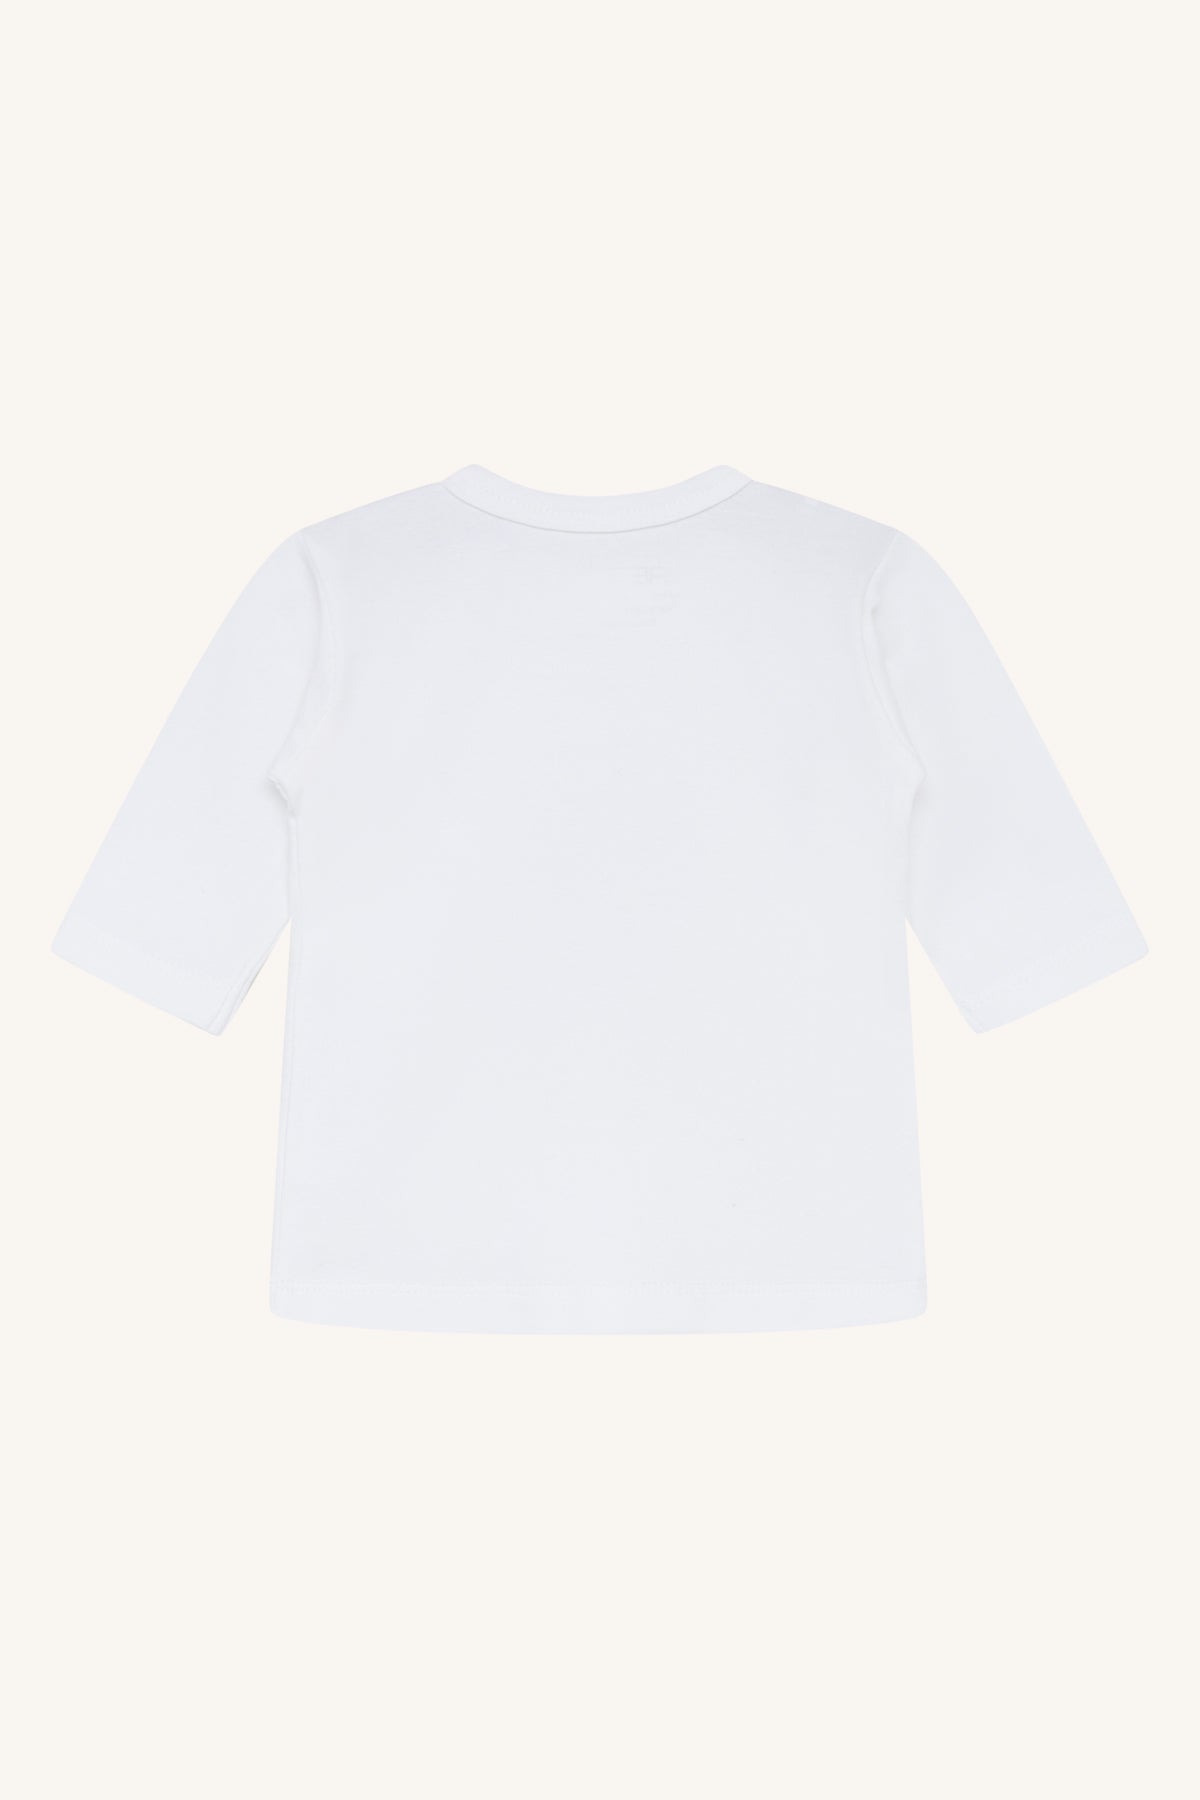 HCAlex - T-Shirt